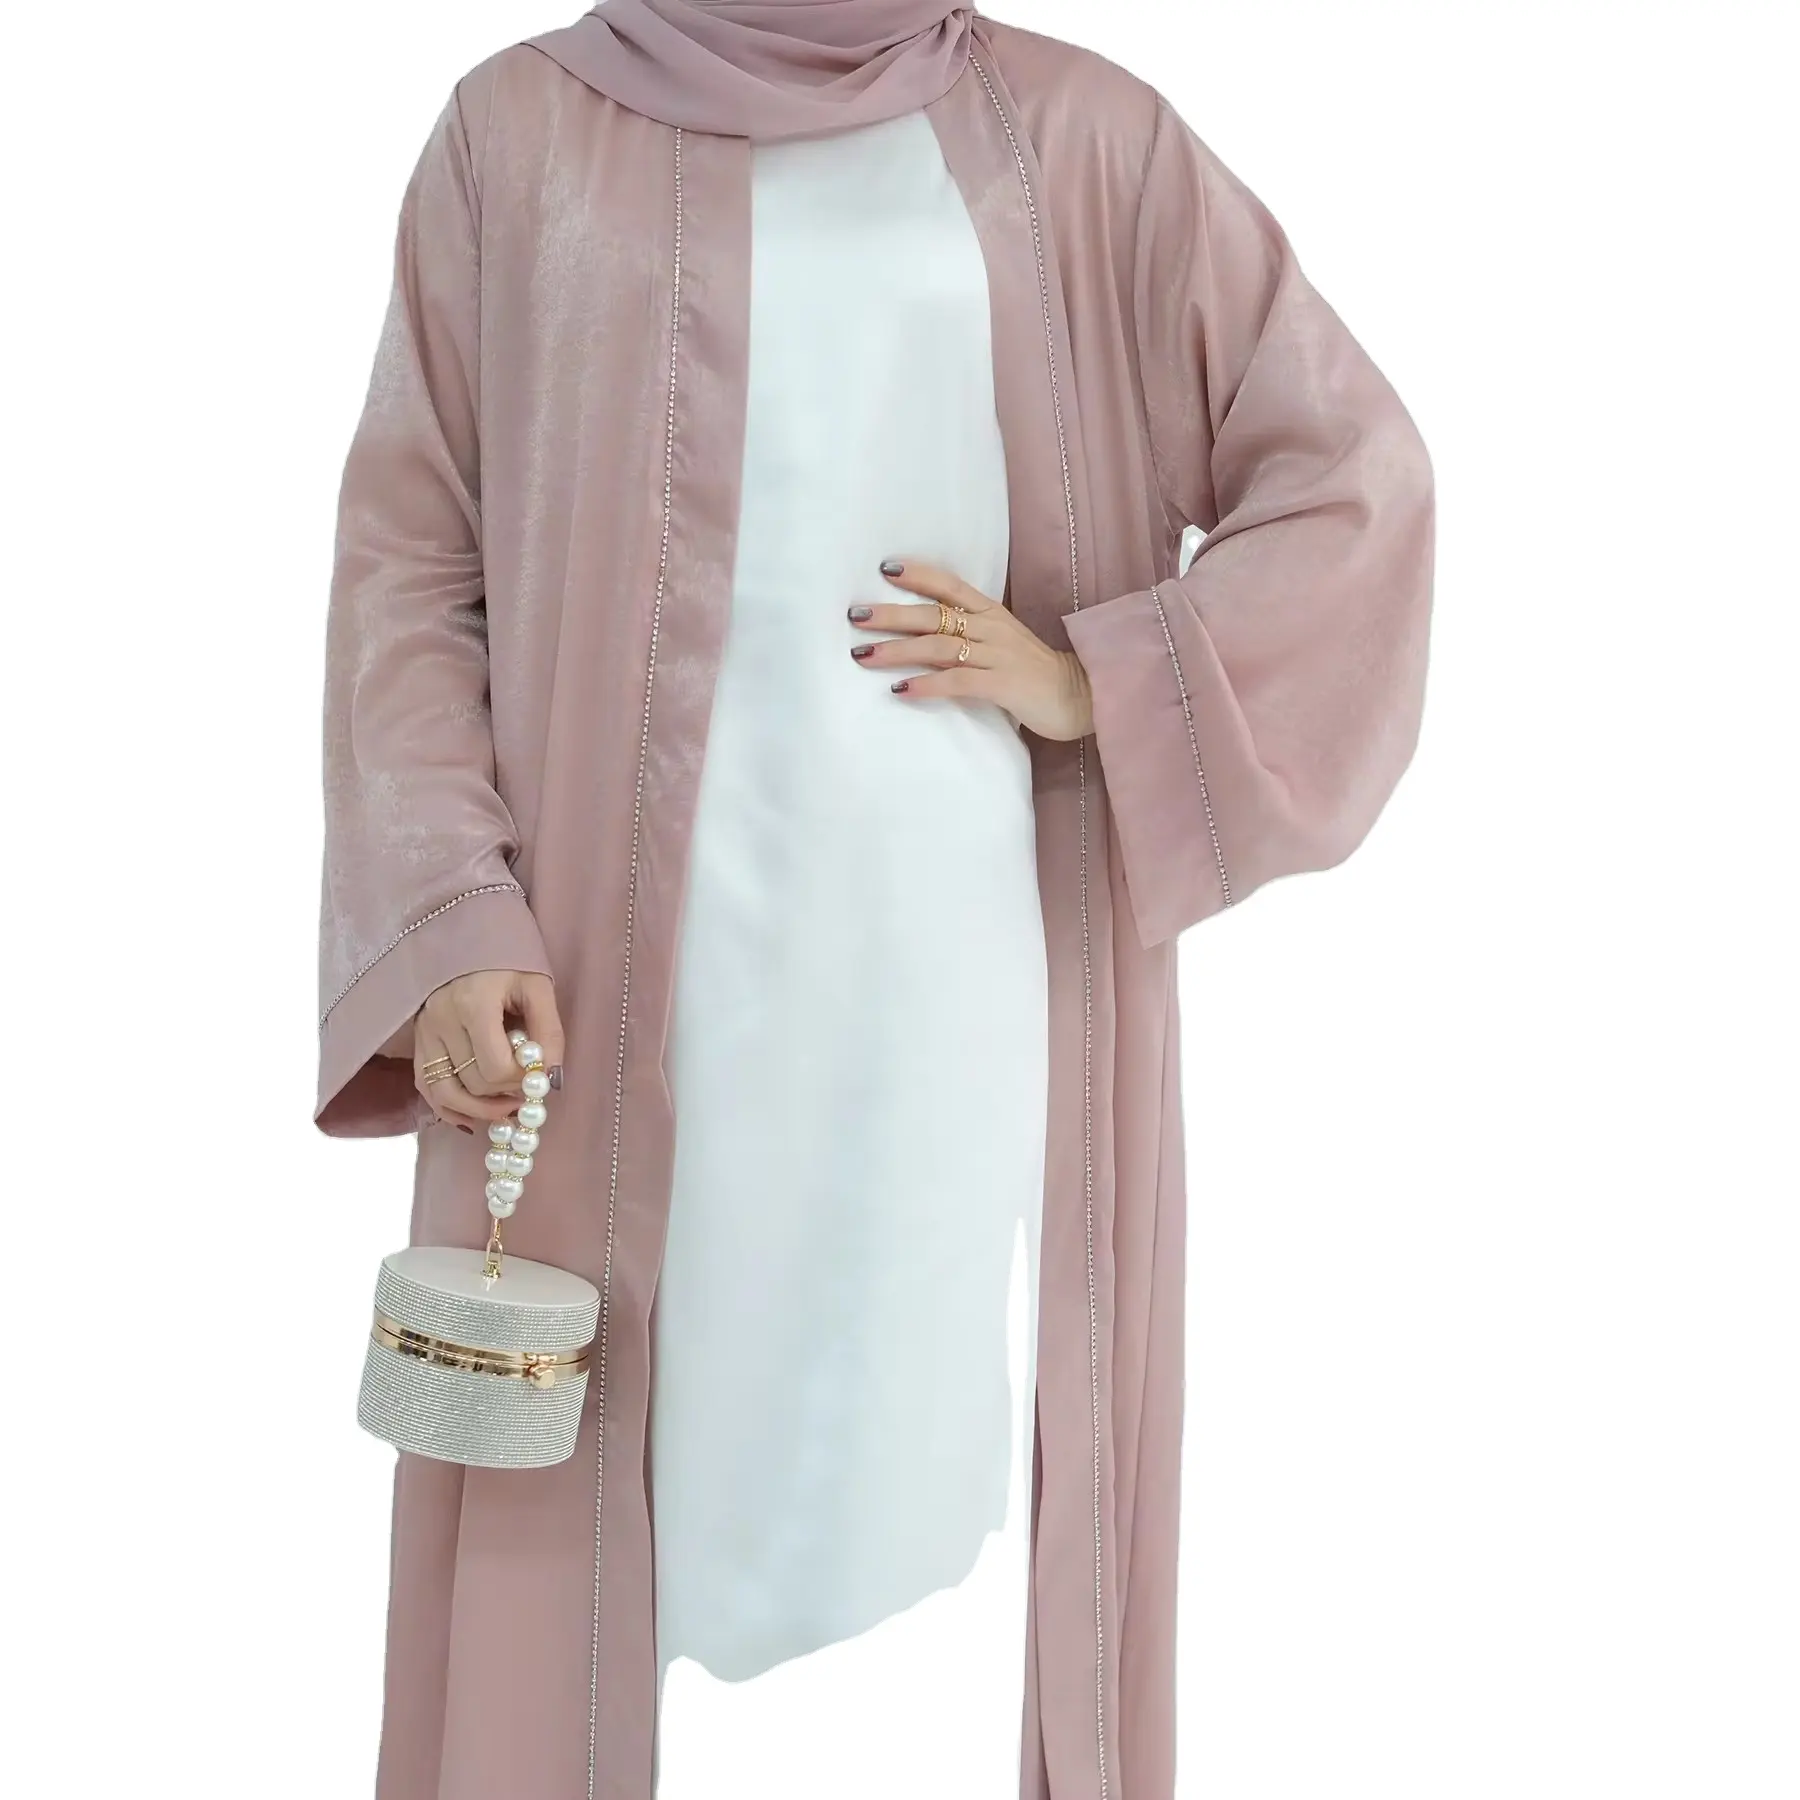 Produsen Dubai desain Abaya pakaian Islami kardigan dengan berlian Abaya gaun Muslim wanita